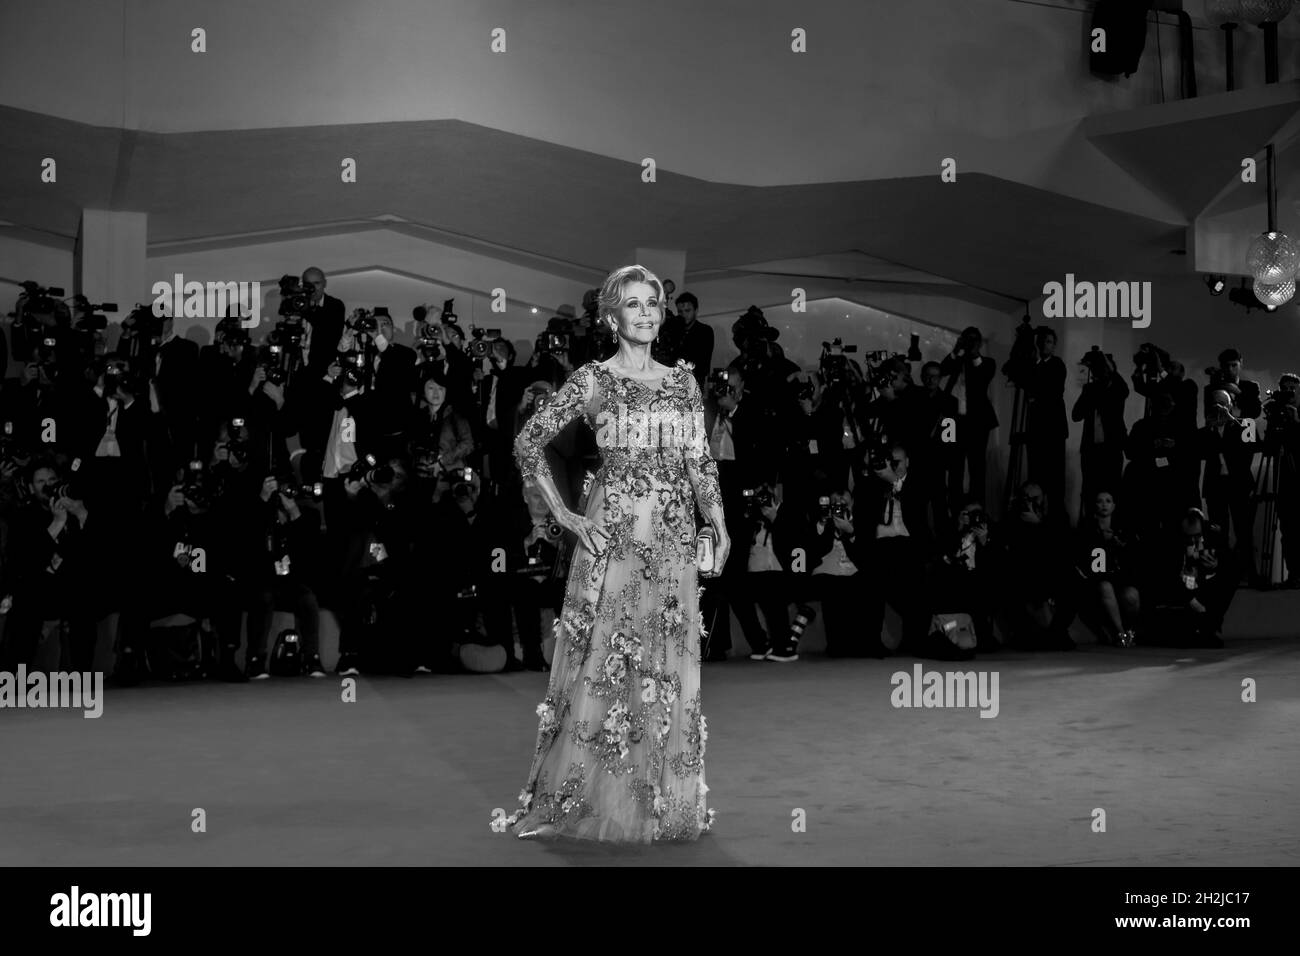 Jane fonda cammina sul tappeto rosso davanti alla proiezione "Our Souls at Night" durante il settantaquattresimo Festival del Cinema di Venezia. Venezia, Italia, 01 settembre 2017. ( Foto Stock